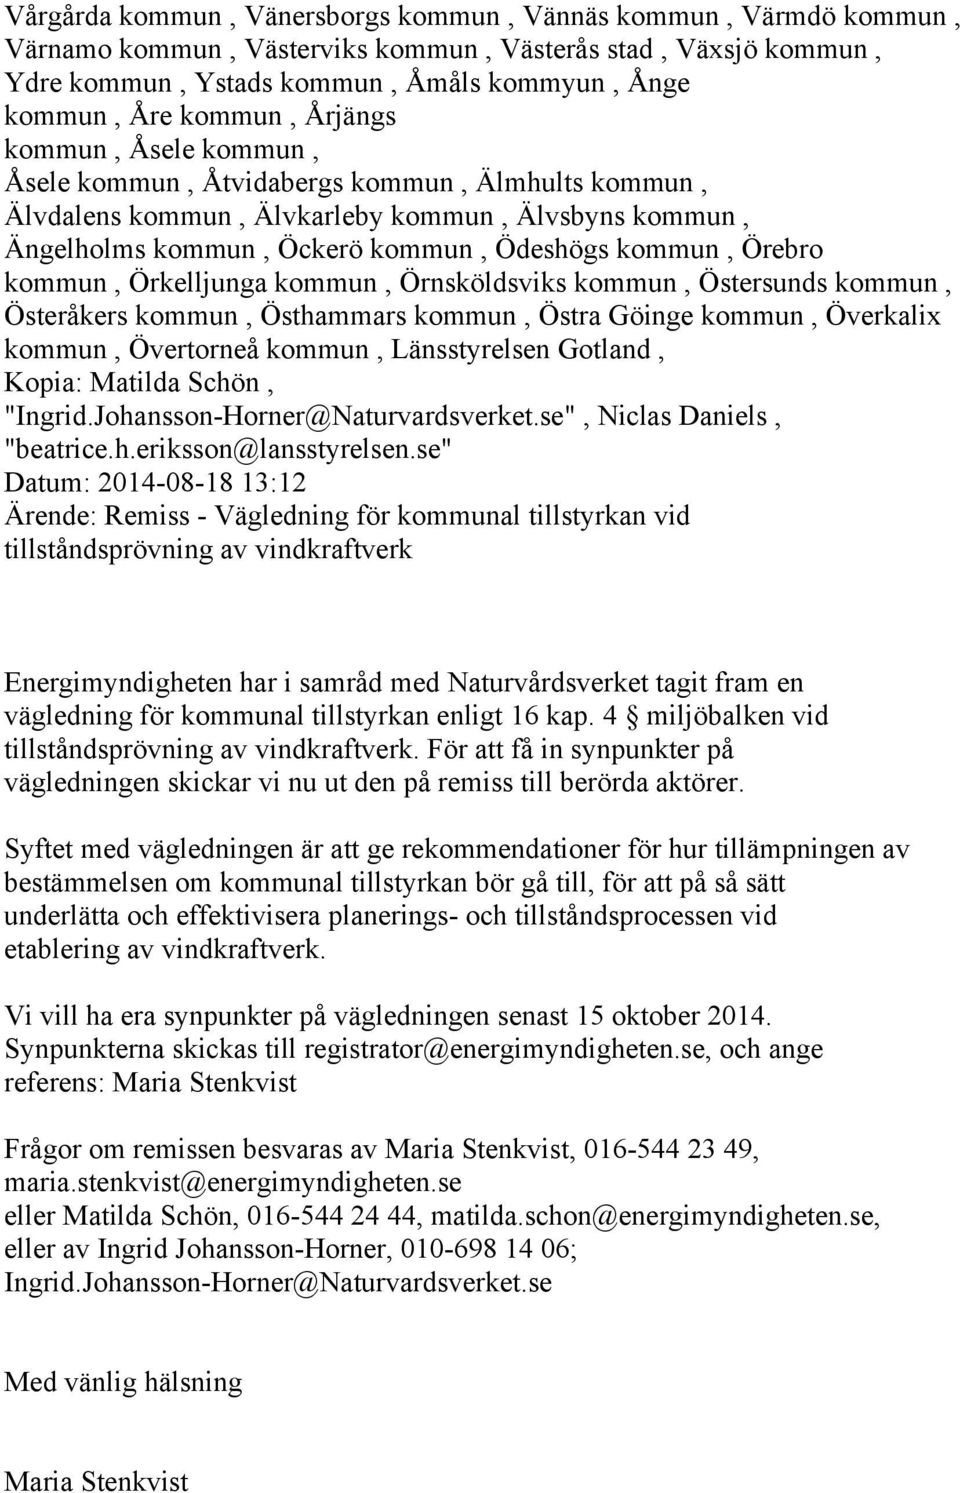 Johansson-Horner@Naturvardsverket.se", Niclas Daniels, "beatrice.h.eriksson@lansstyrelsen.